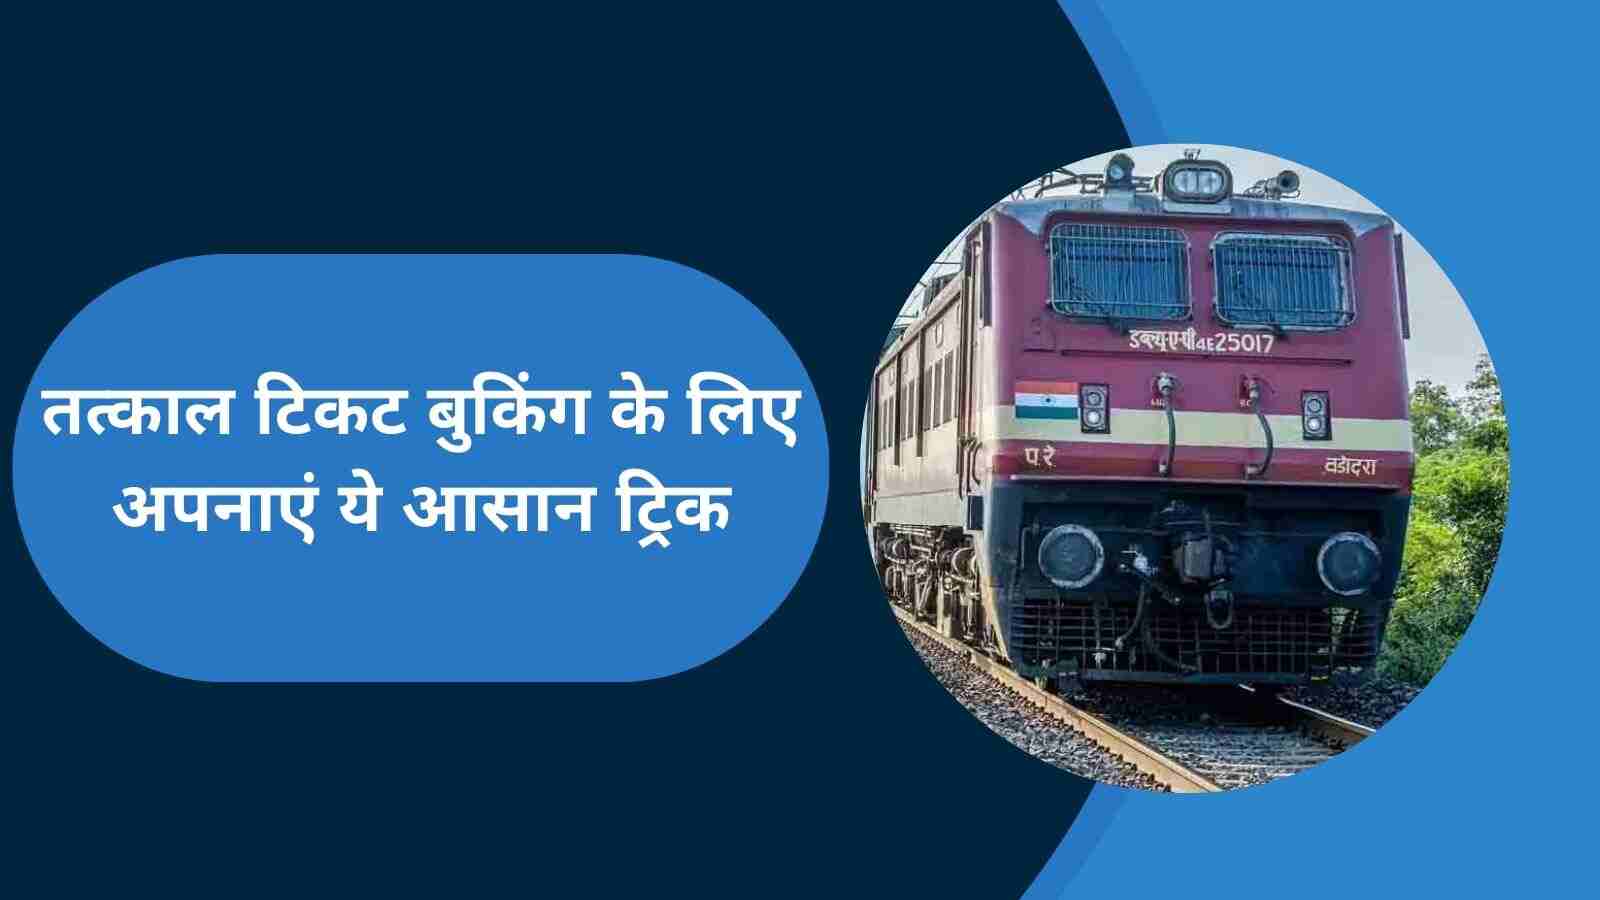 Indian Railway: तत्काल टिकट बुक करने के लिए अपनाएं ये टिप्स, मिल जाएगी कंफर्म टिकट